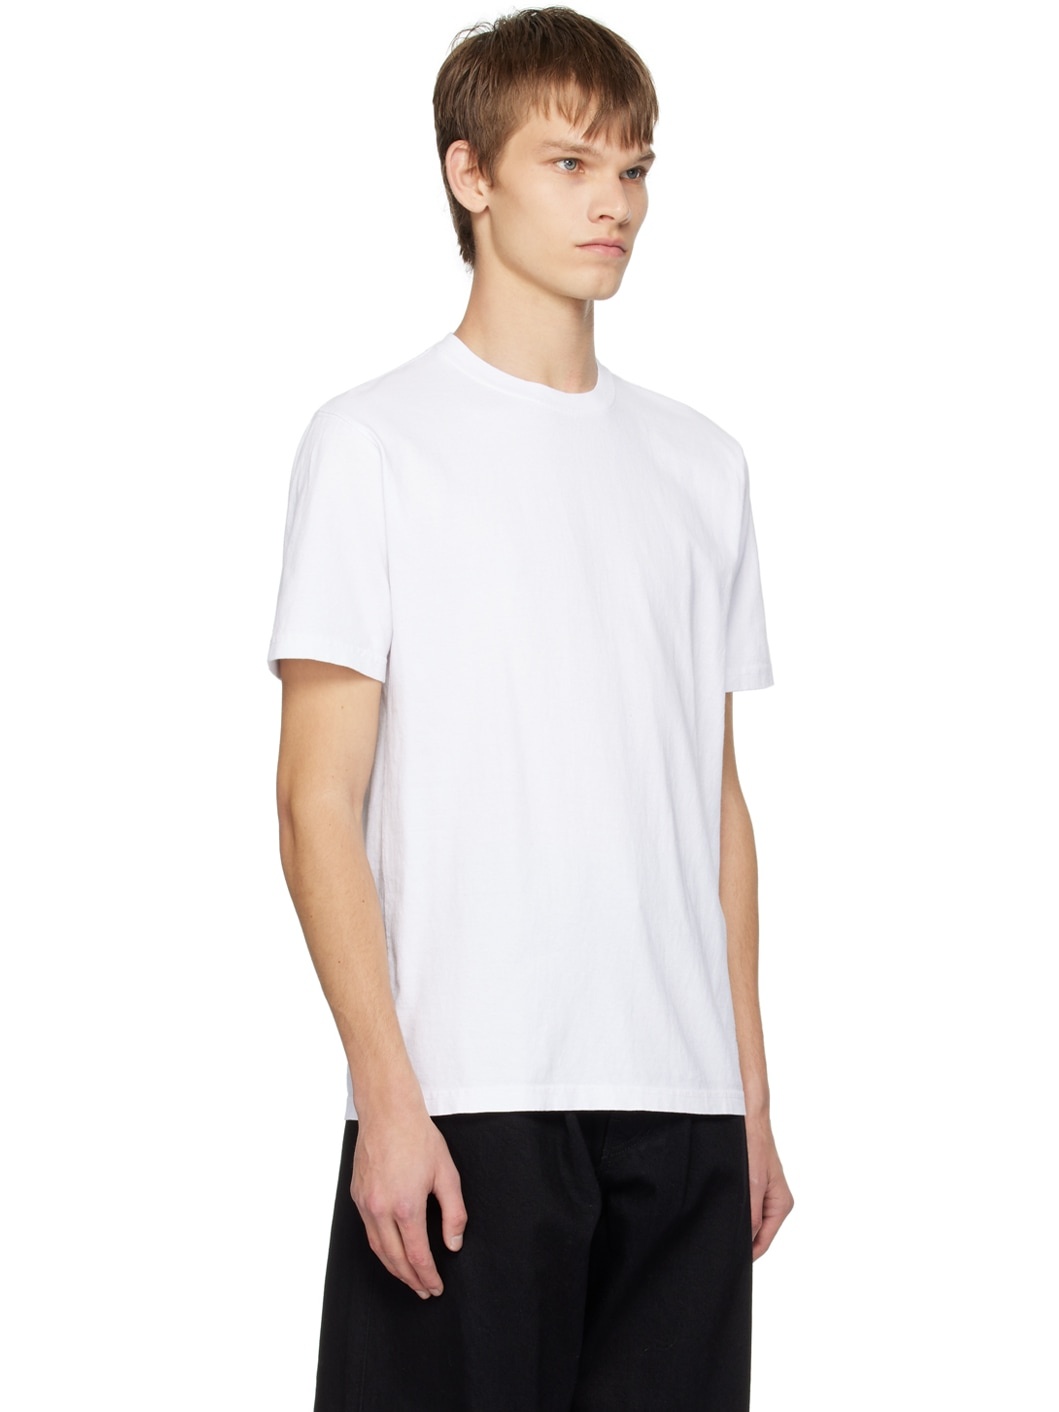 White Heavyweight T-Shirt - 2